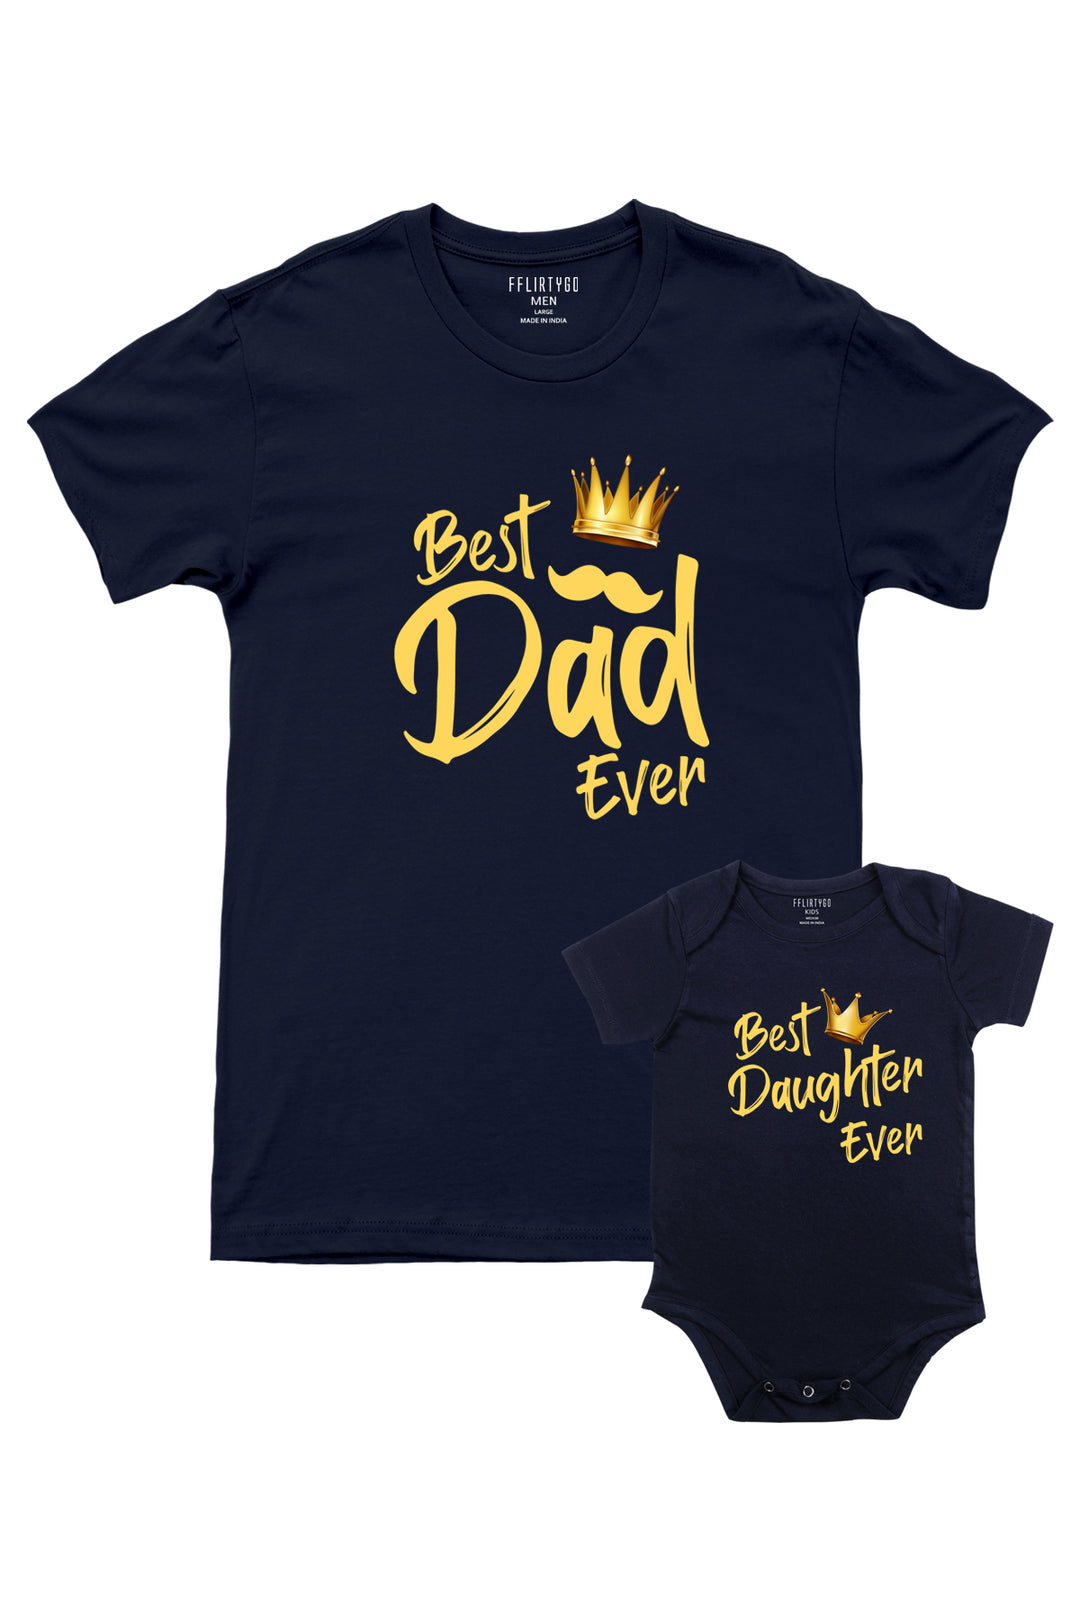 Best Dad - Best Daughter